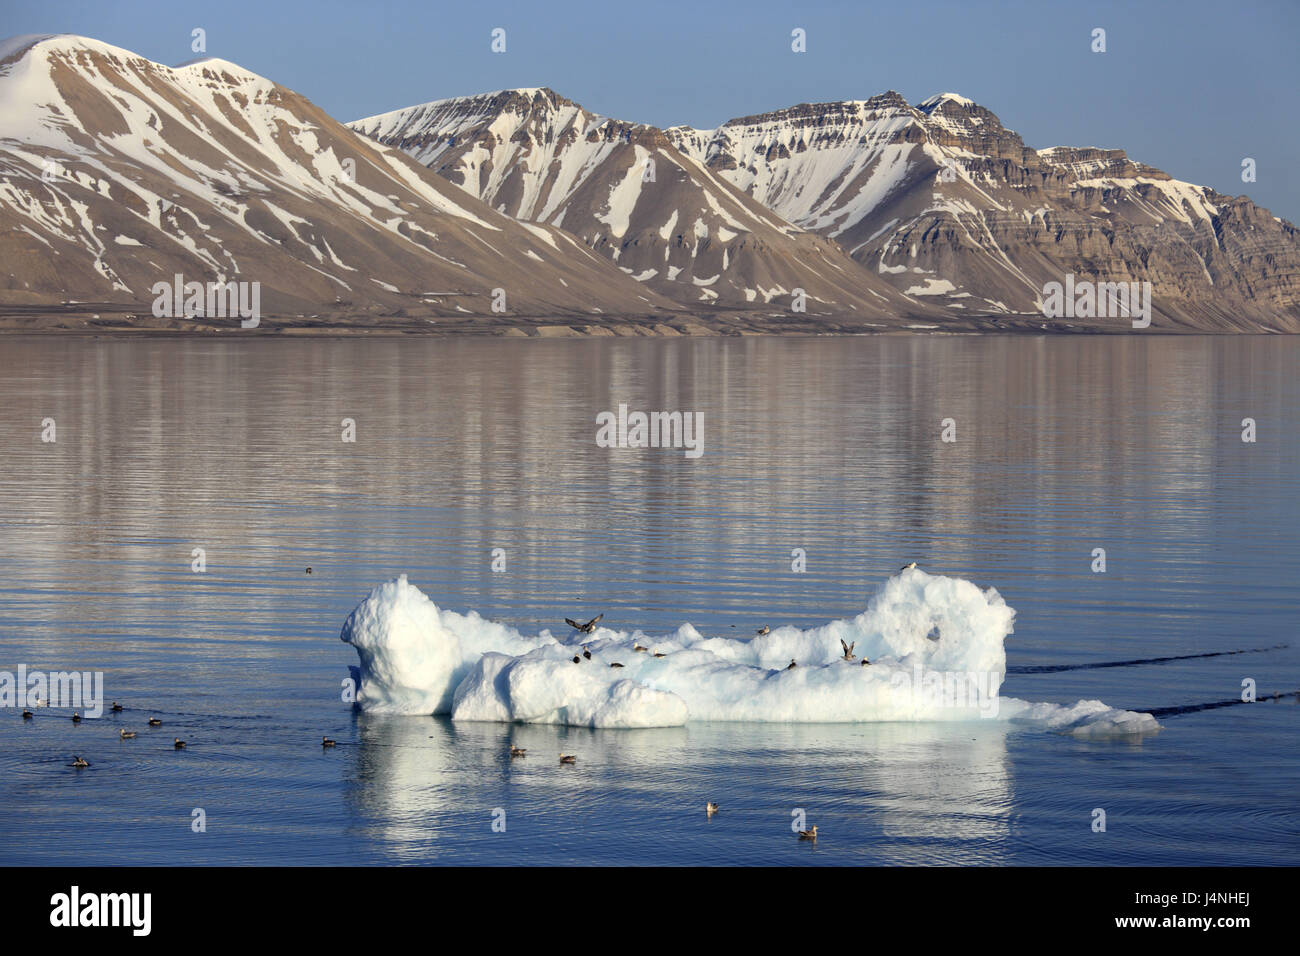 Norvegia Isole Svalbard, Spitsbergen, Isfjord, paesaggi costieri, mare, iceberg, Foto Stock